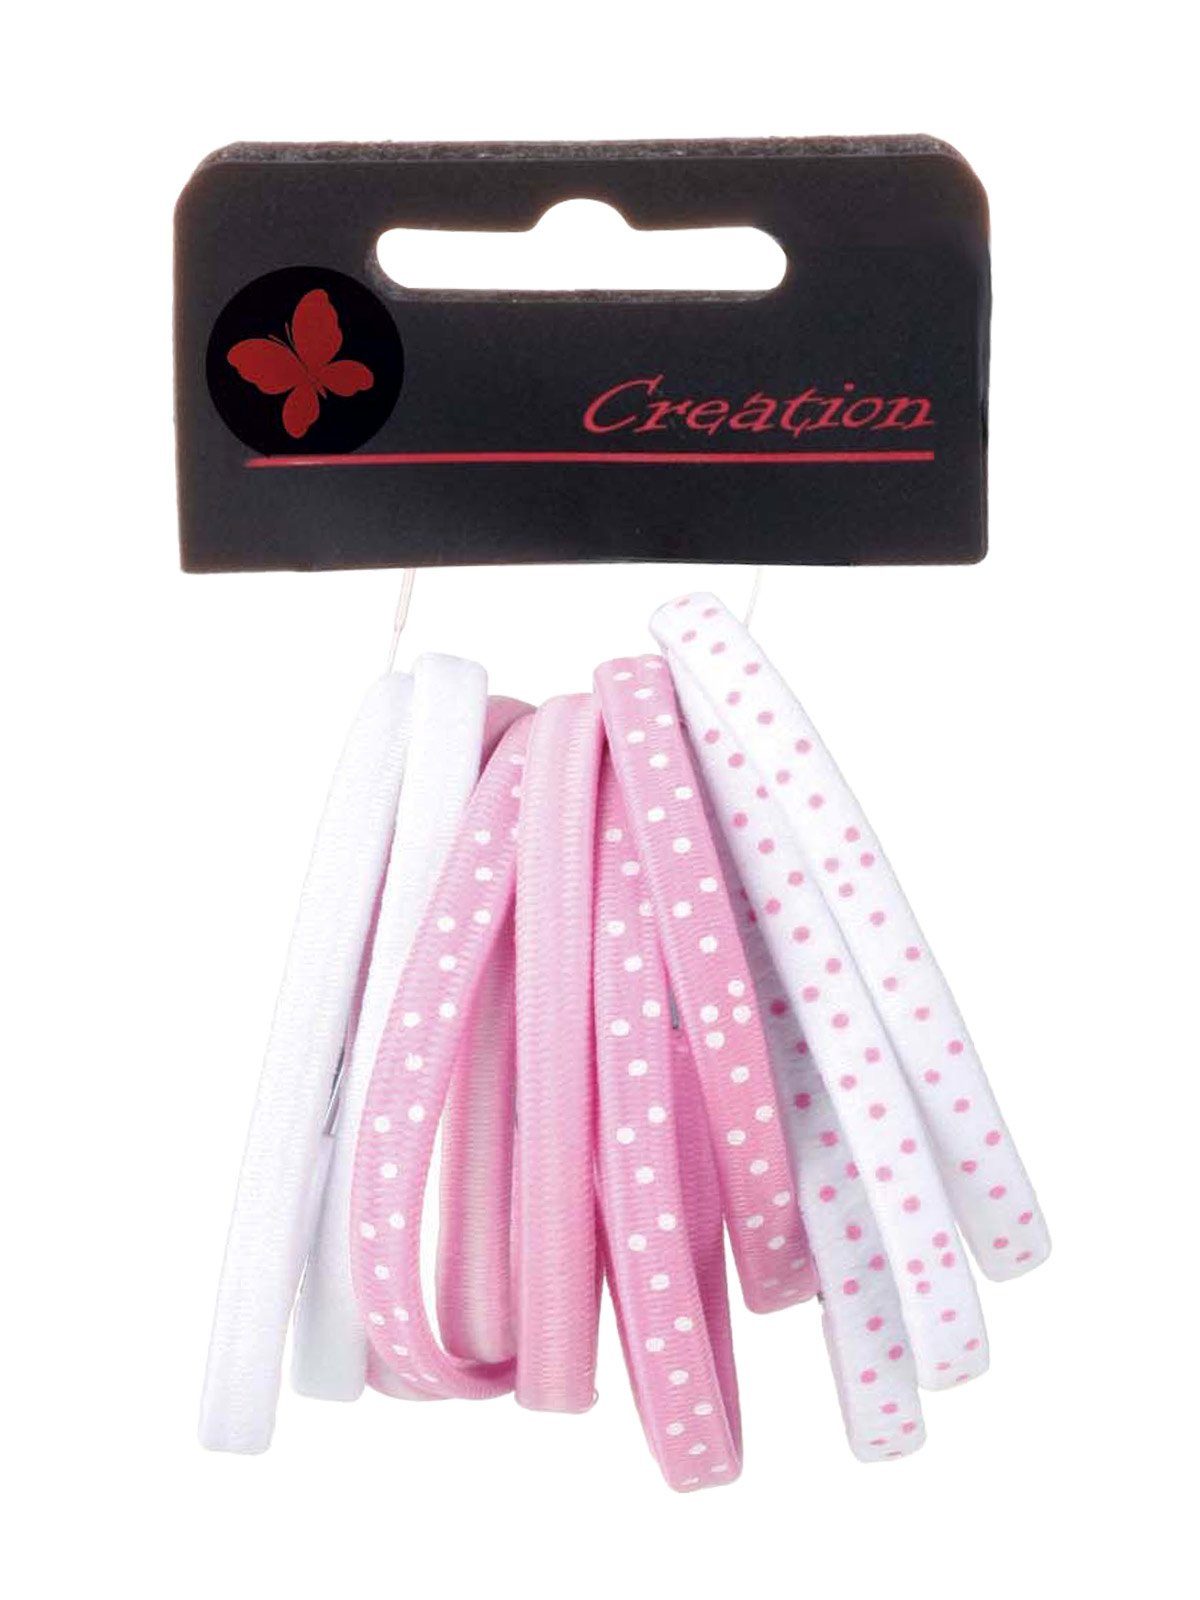 Haargummis Metallclip Kosmetex 12er-Pack rosa Farb-Mix mit Haargummi